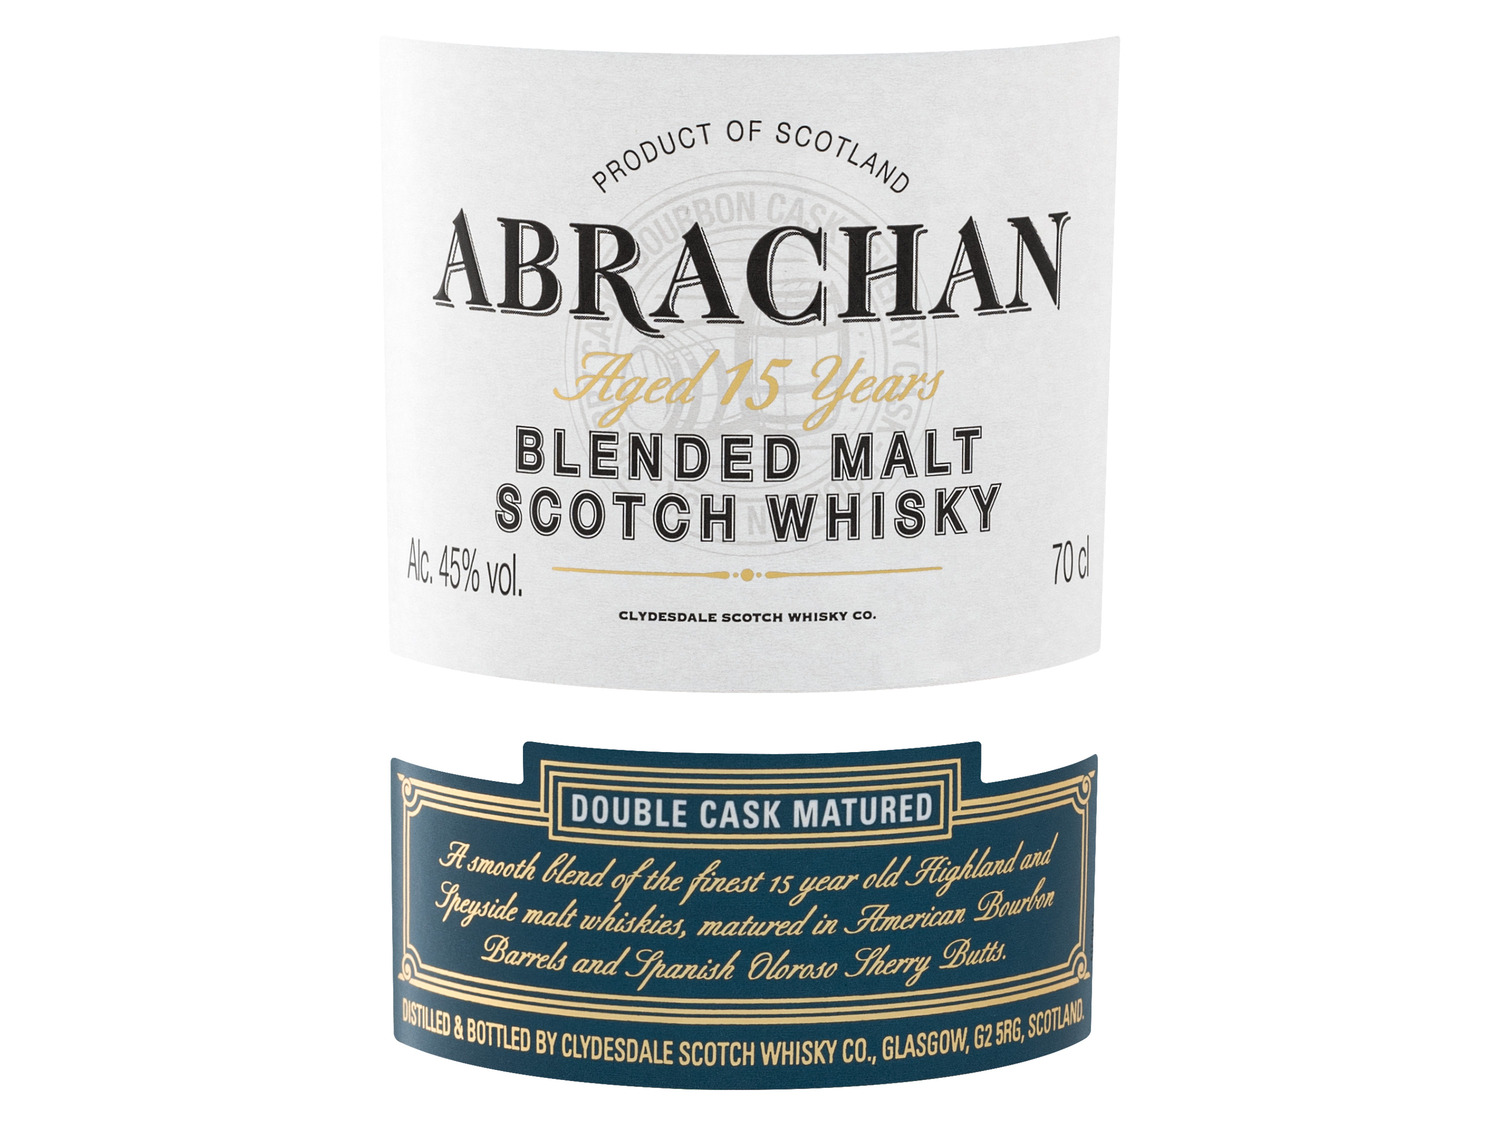 Abrachan Double Cask Whisk… Scotch Malt Blended Matured